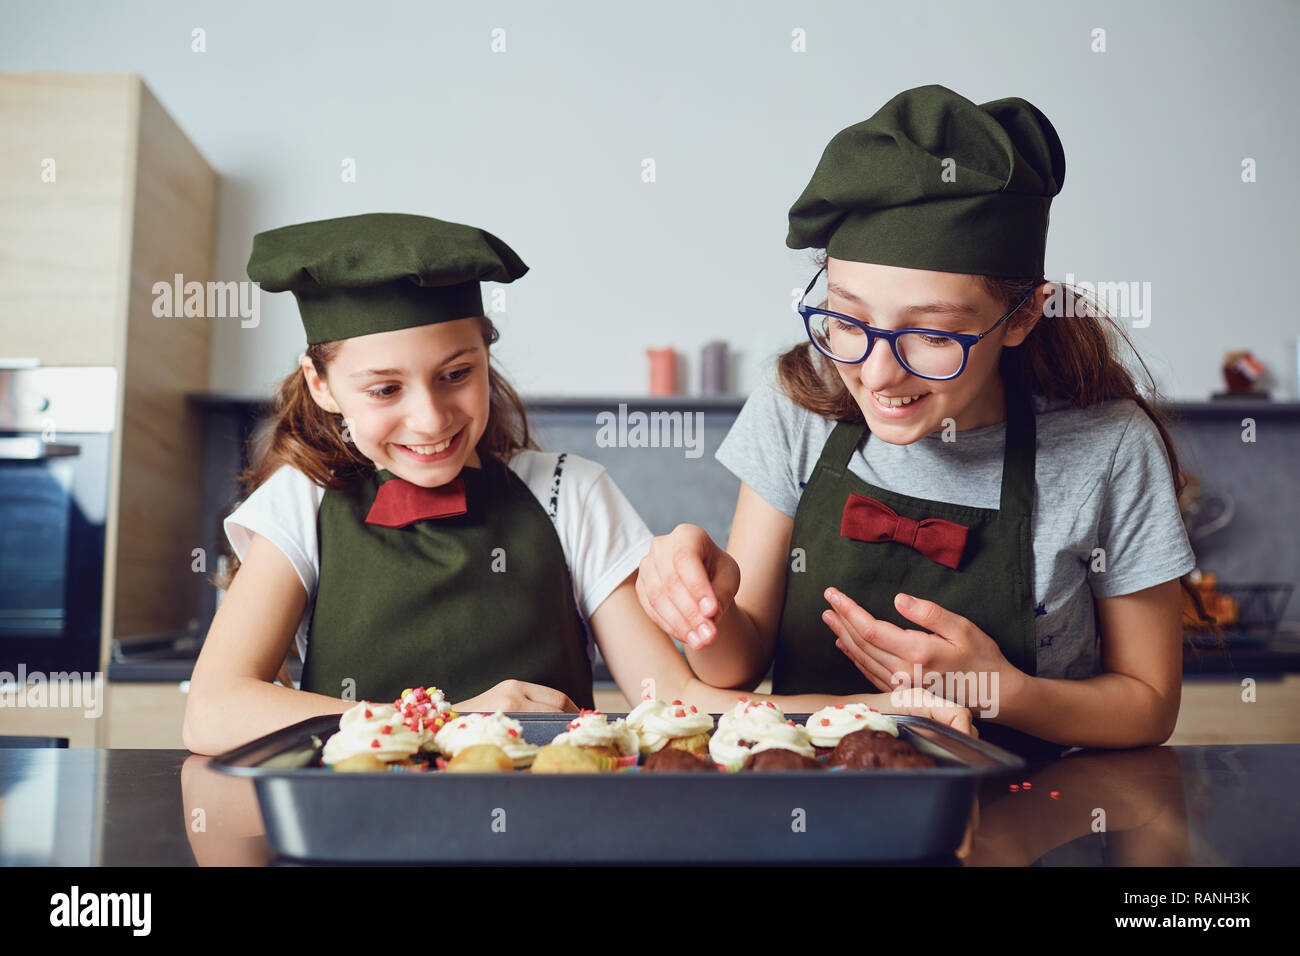 Girls spilling sprinkles on pastry Stock Photo